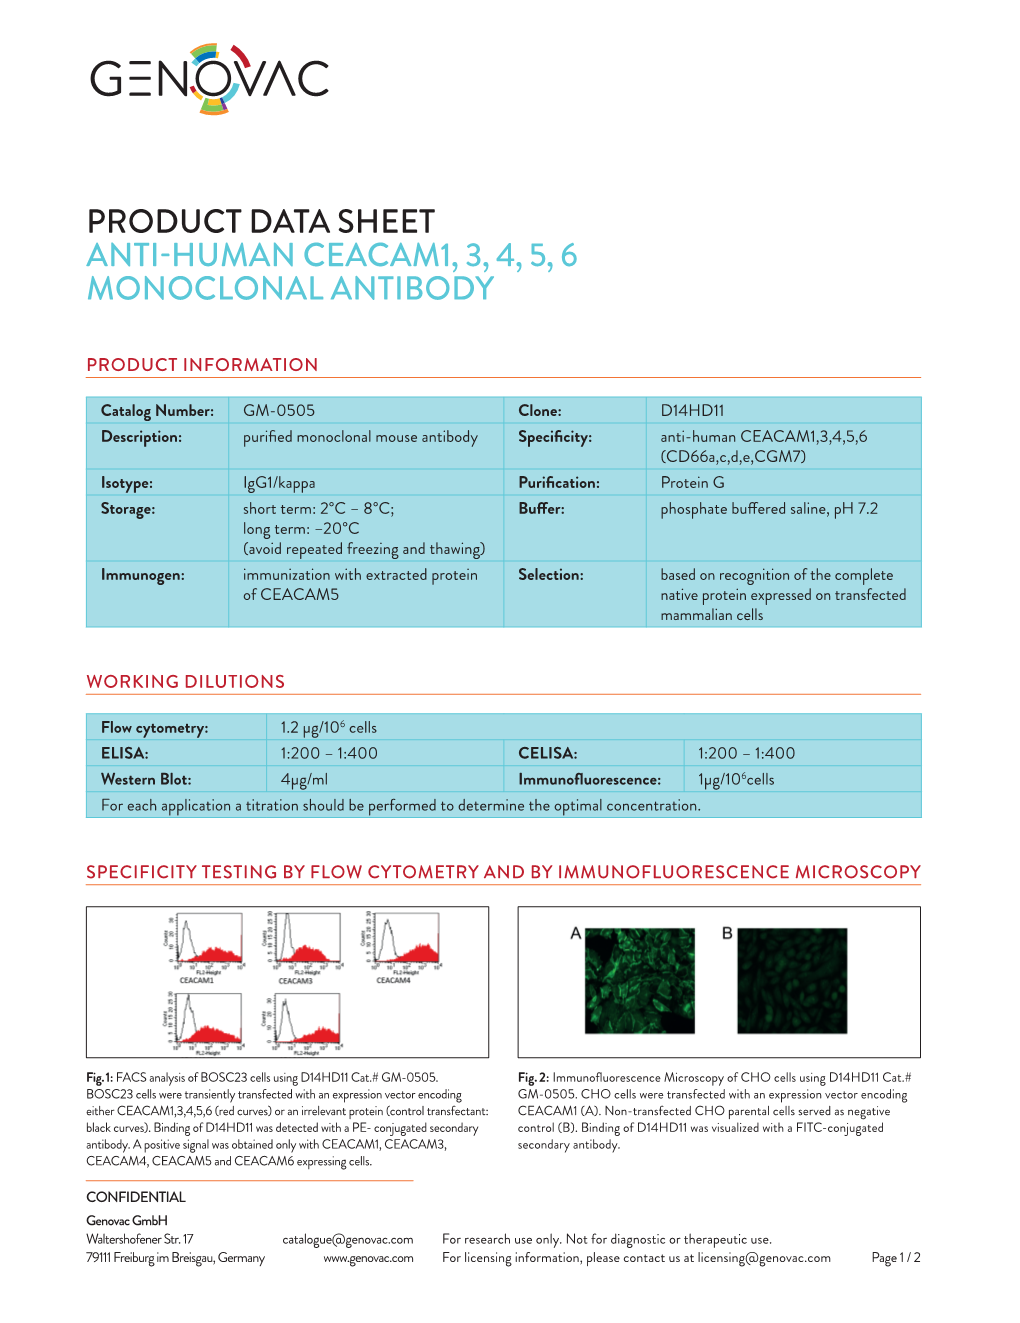 Product Data Sheet Anti-Human Ceacam1, 3, 4, 5, 6 Monoclonal Antibody